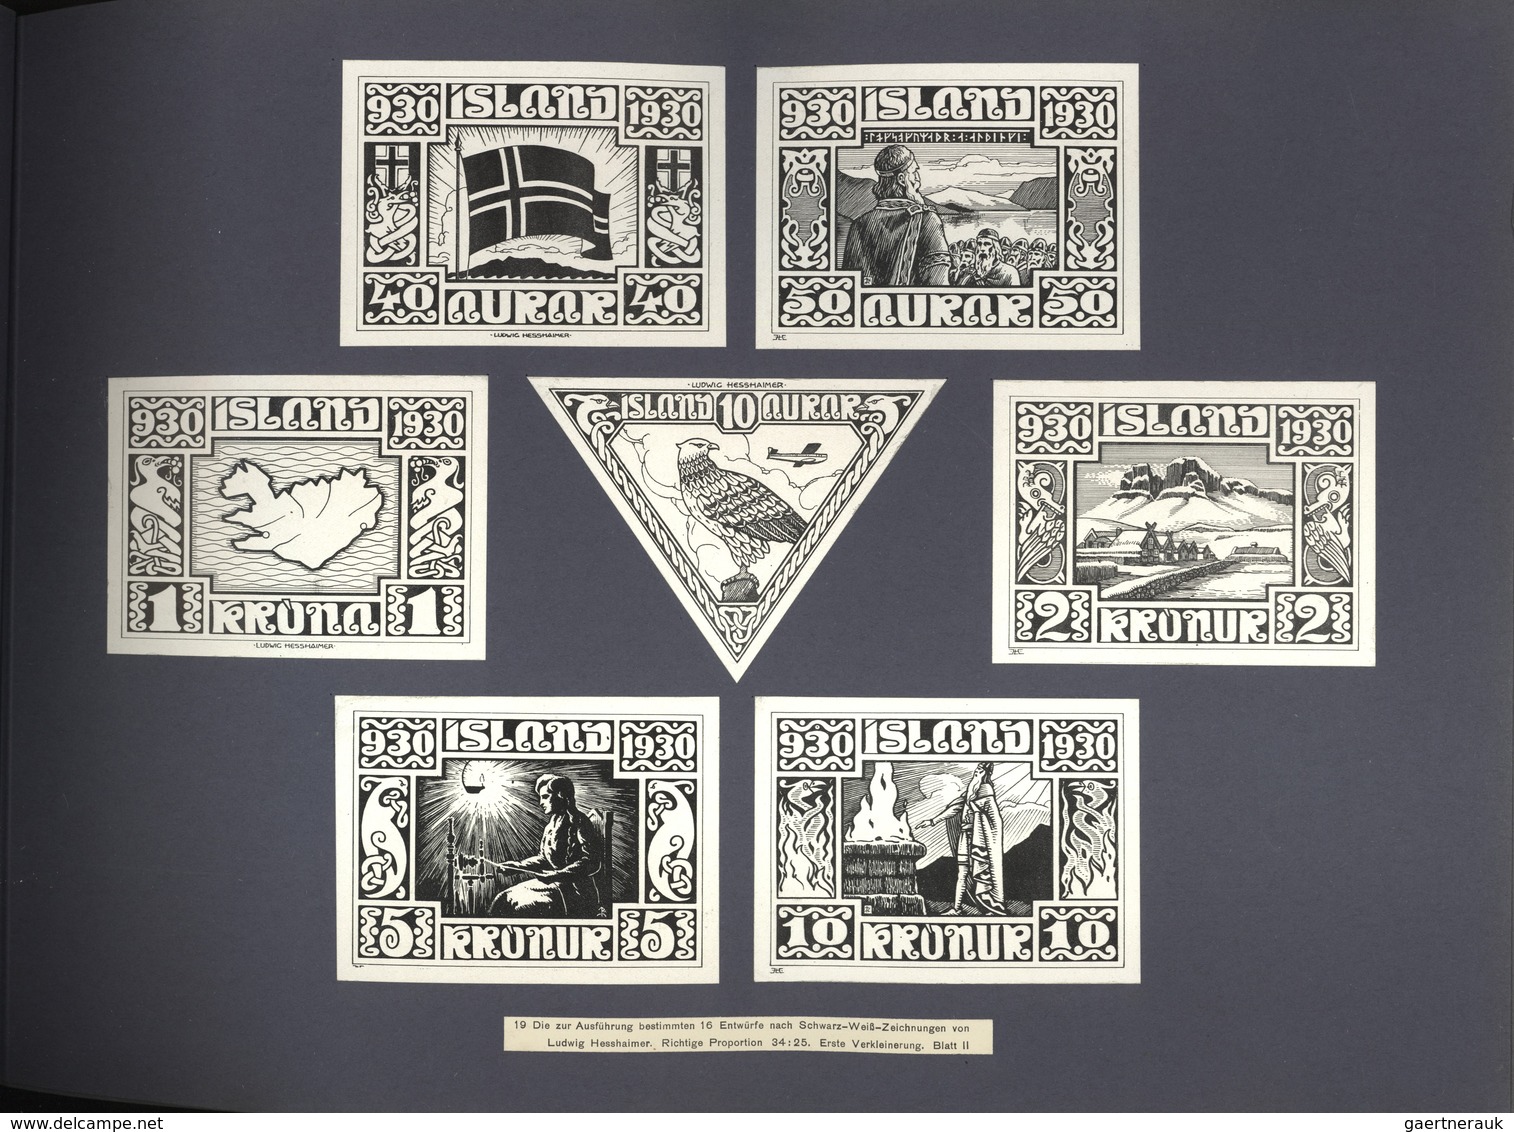 Island: 1930, Die Jubiläumsbriefmarken von Island 930-1930 / entworfen von Ludwig Hesshaimer / gedru